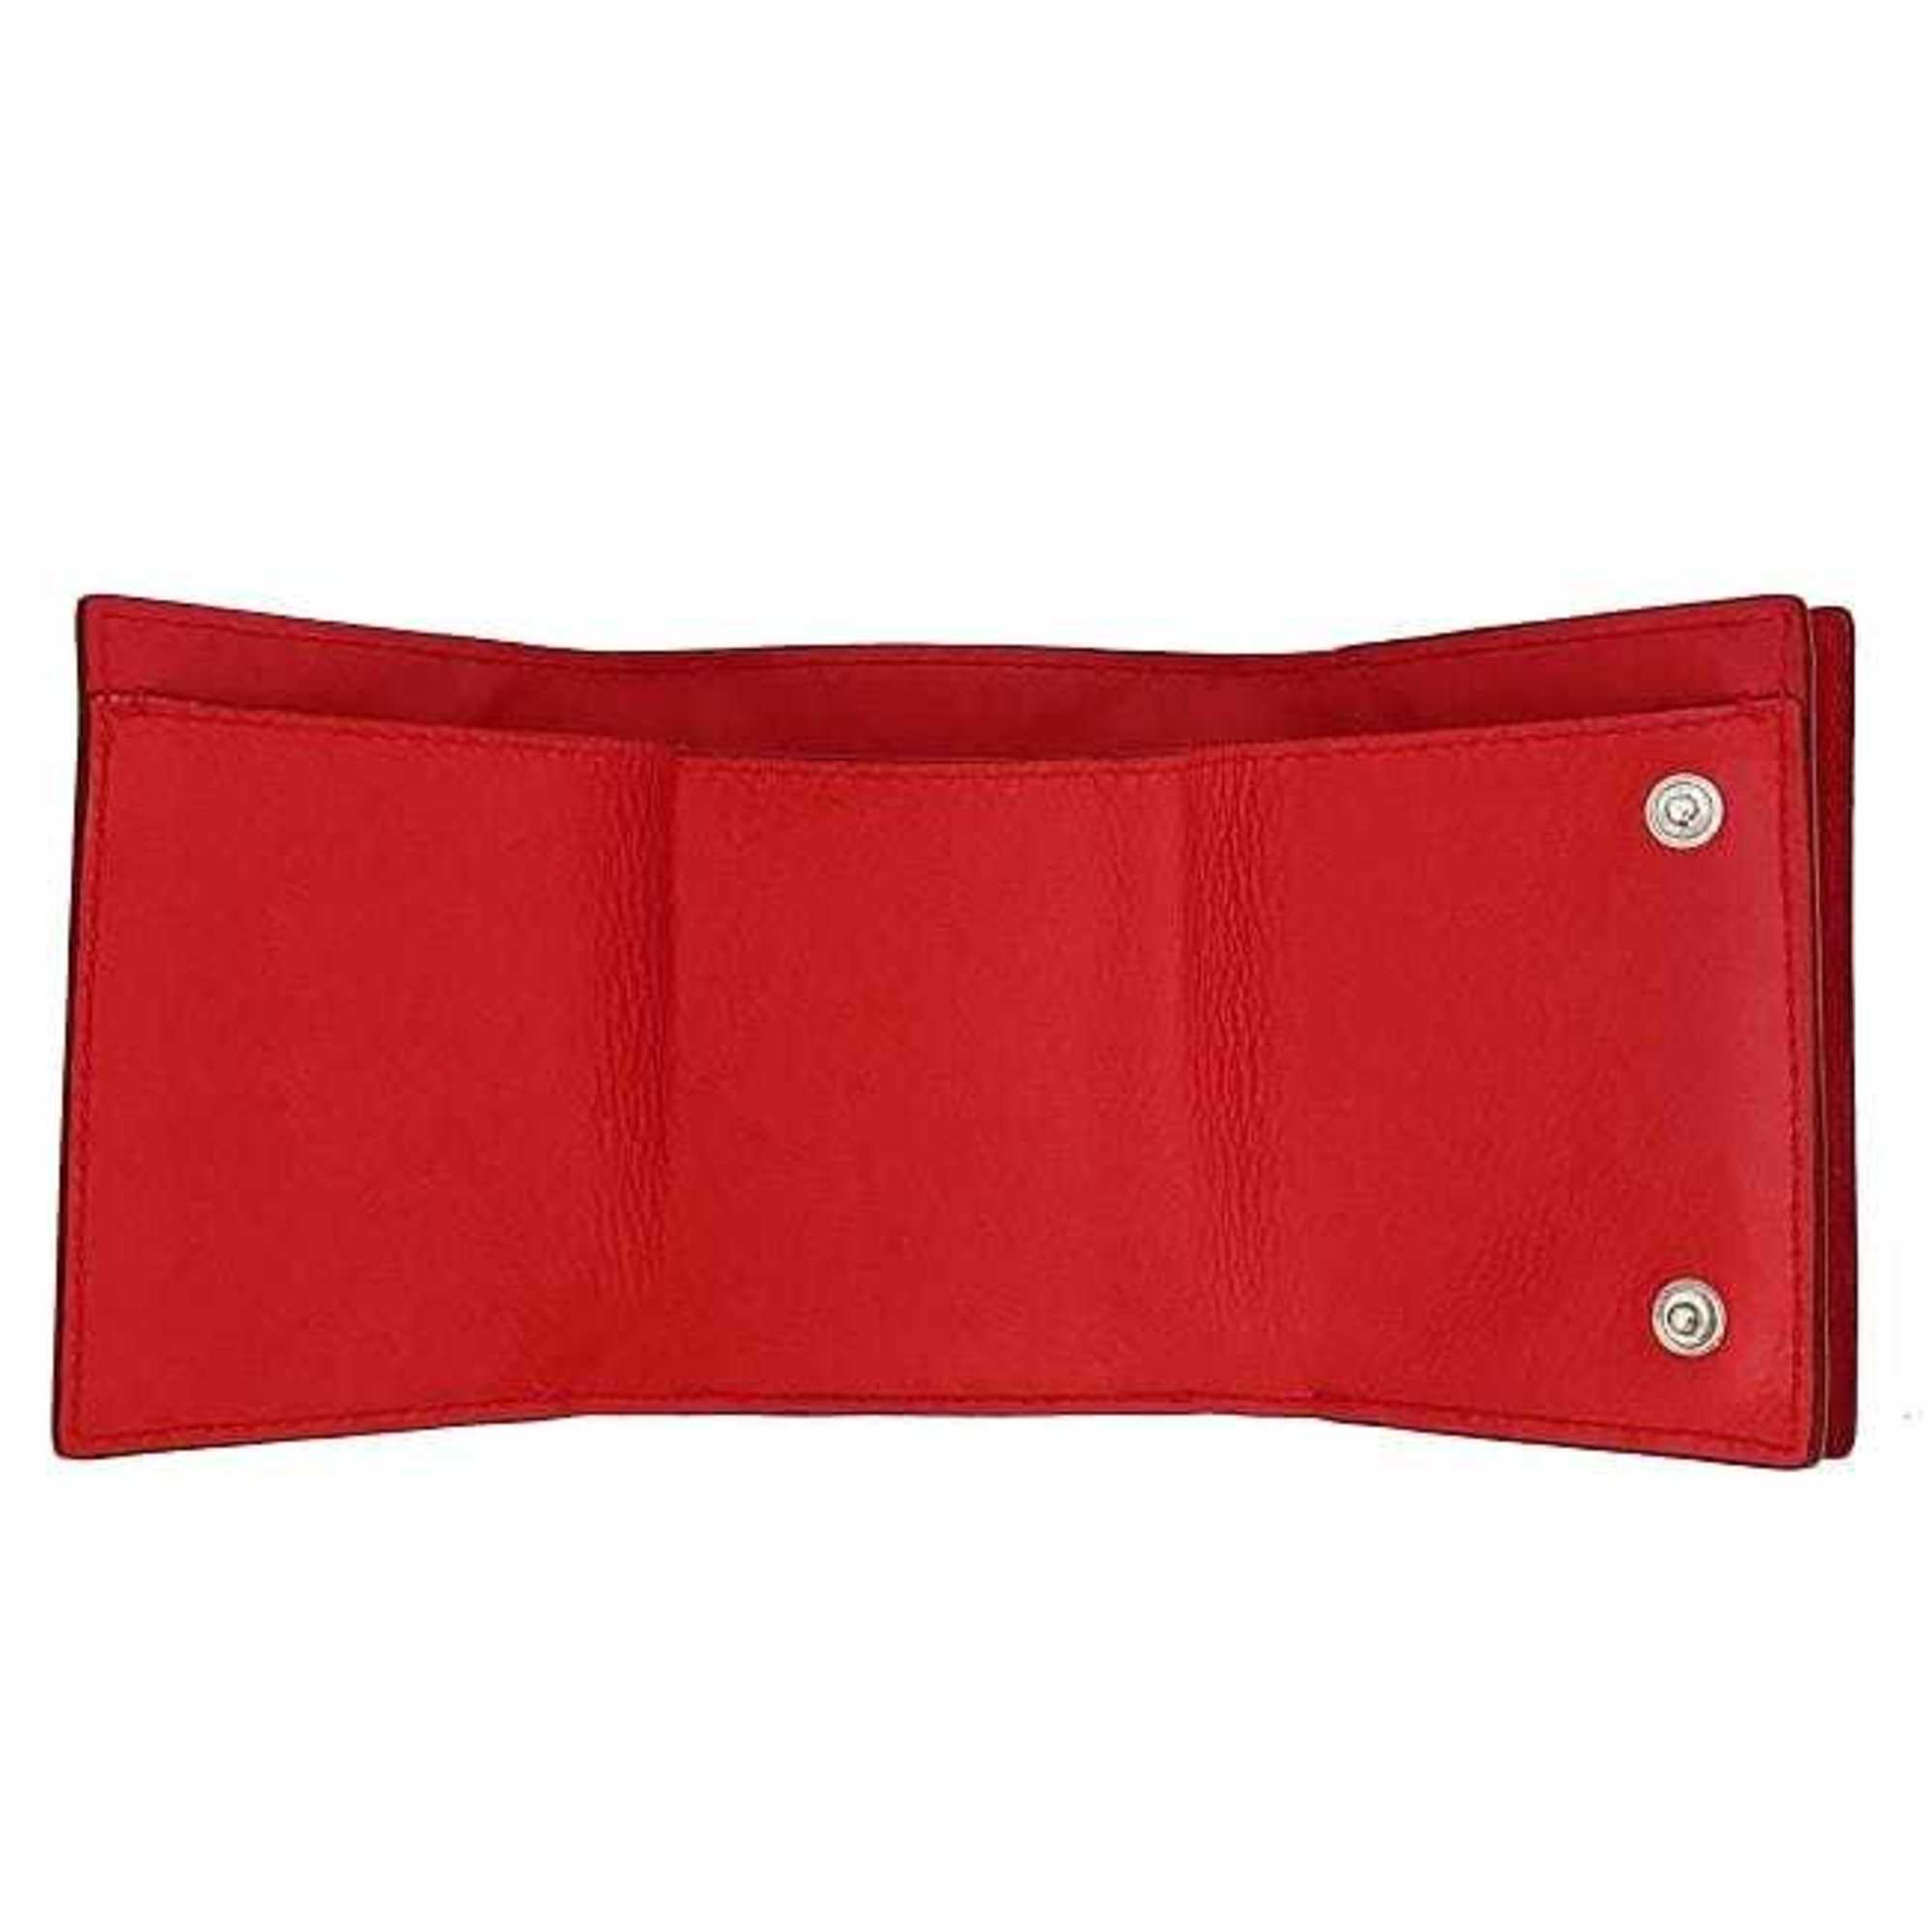 Loewe trifold wallet red linen anagram leather grain LOEWE